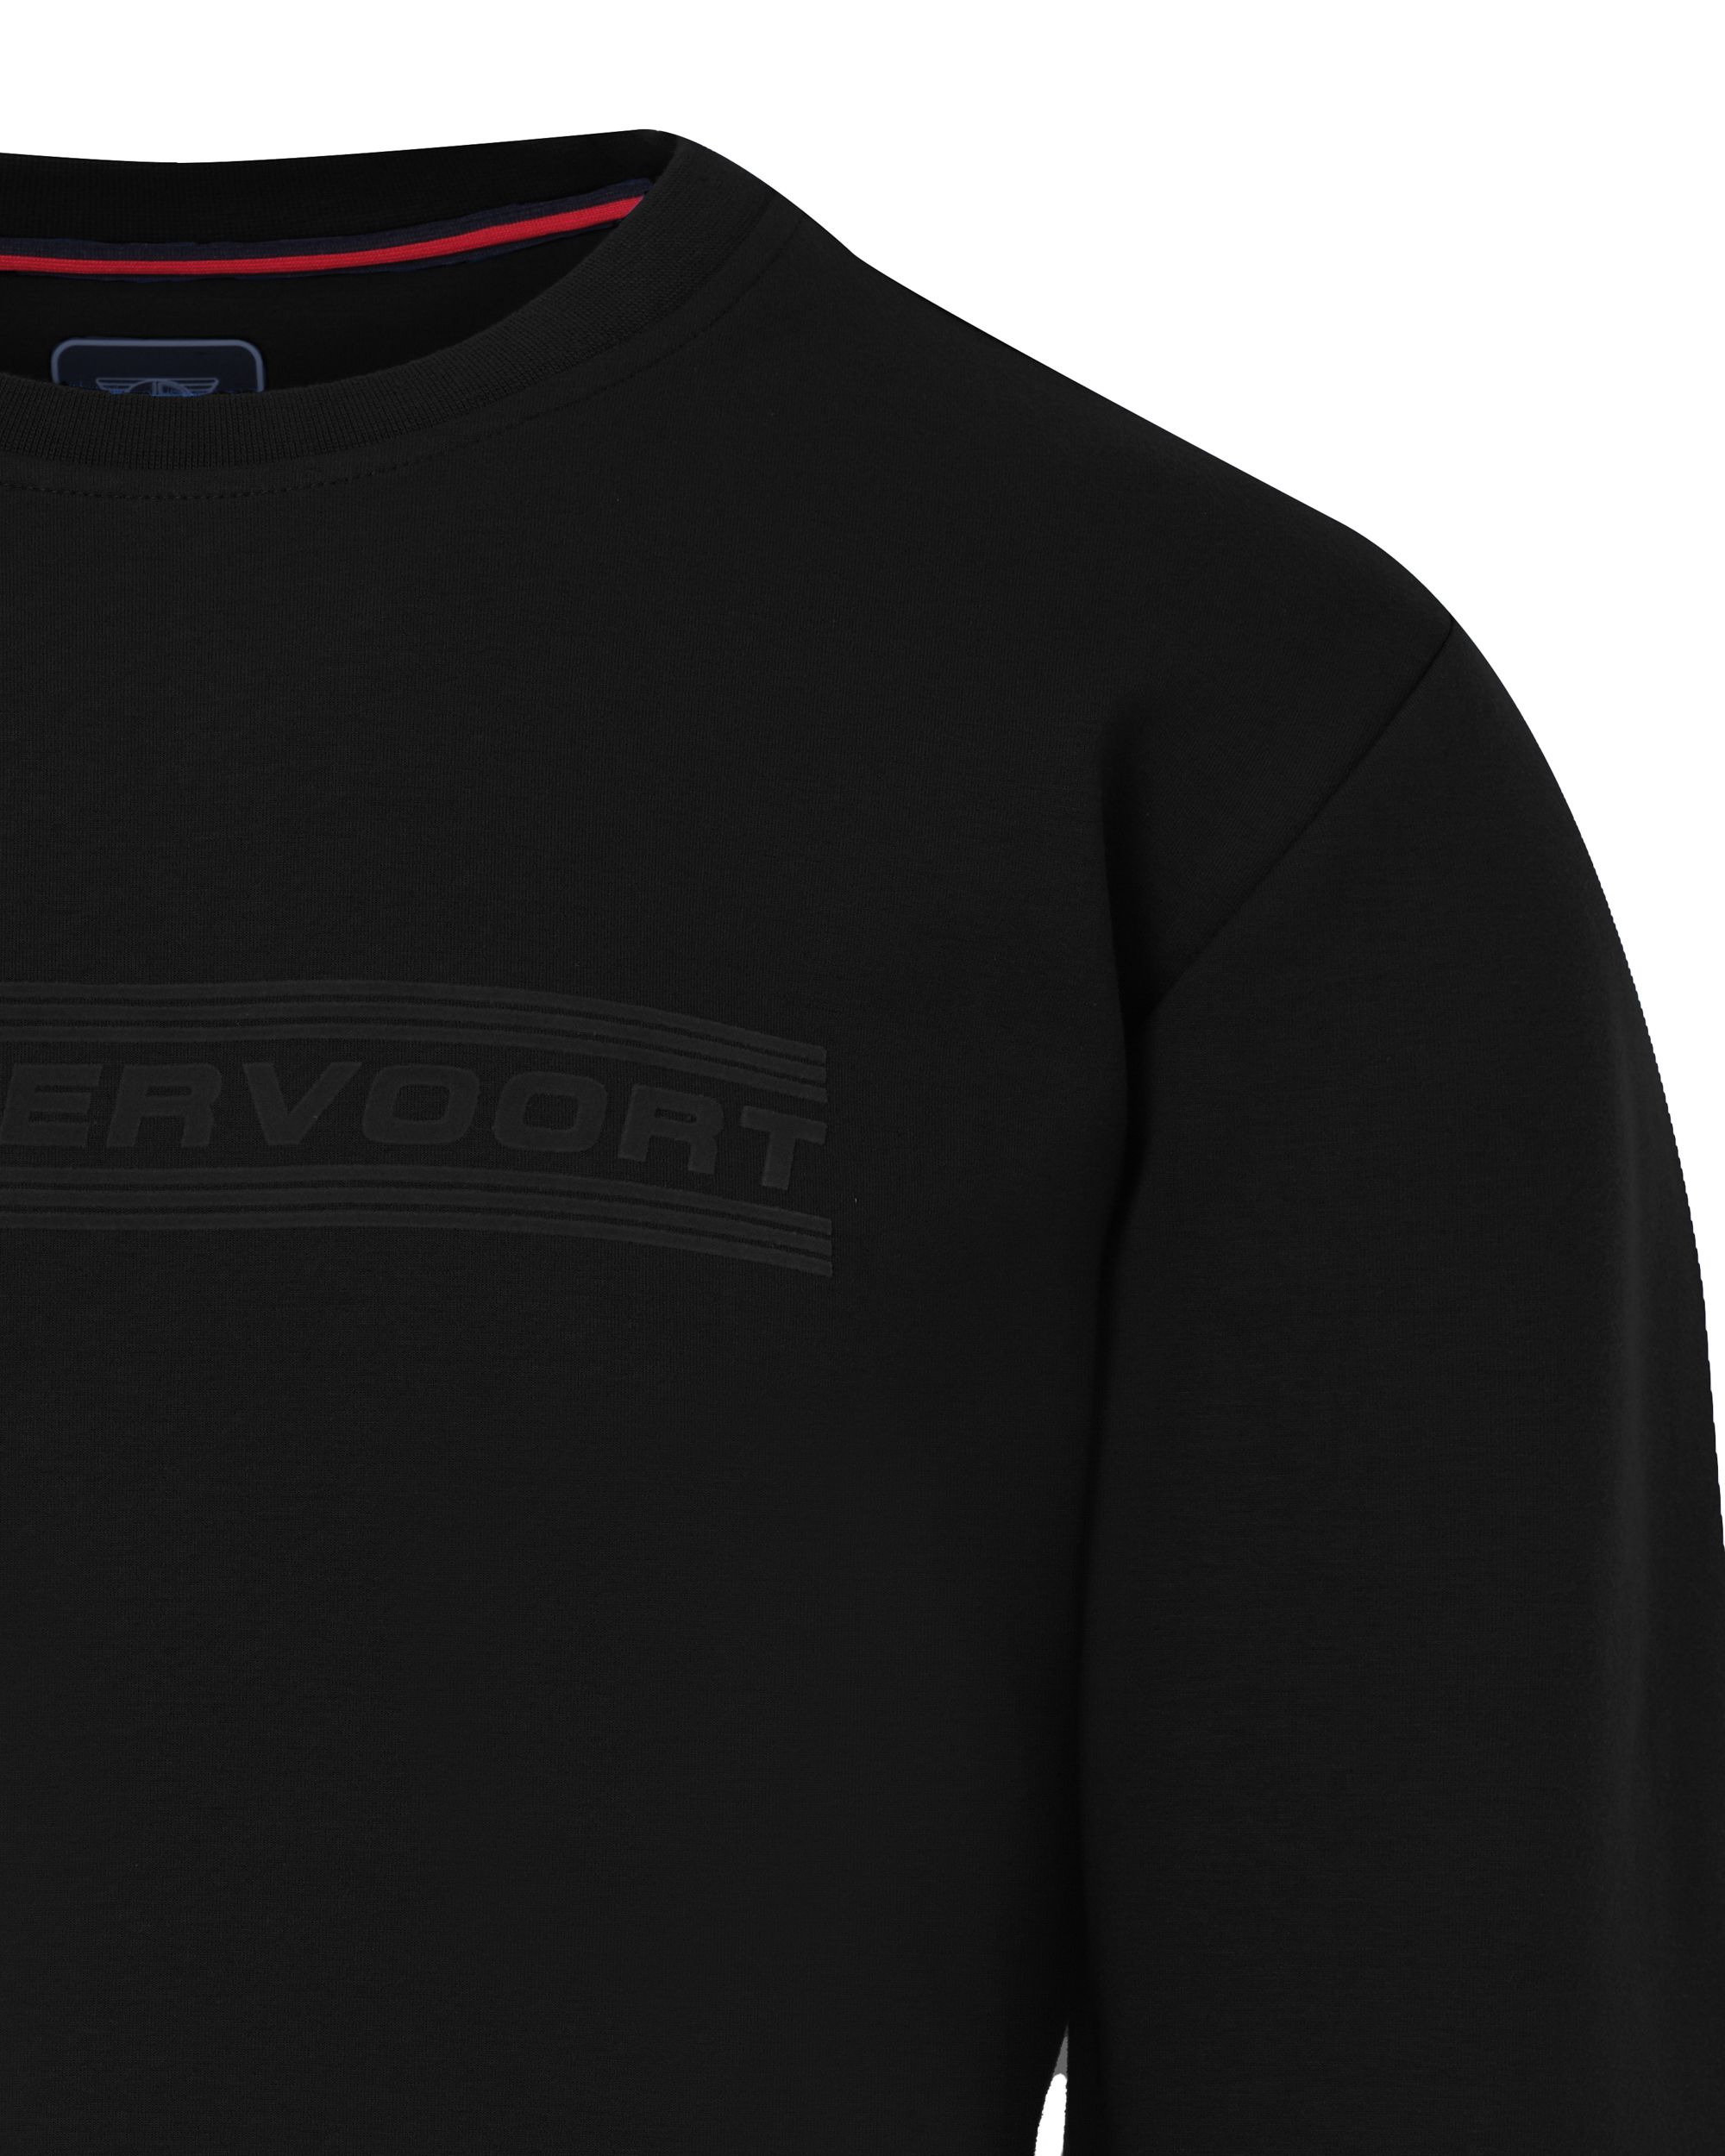 Donkervoort Sweater Black 086790-001-L